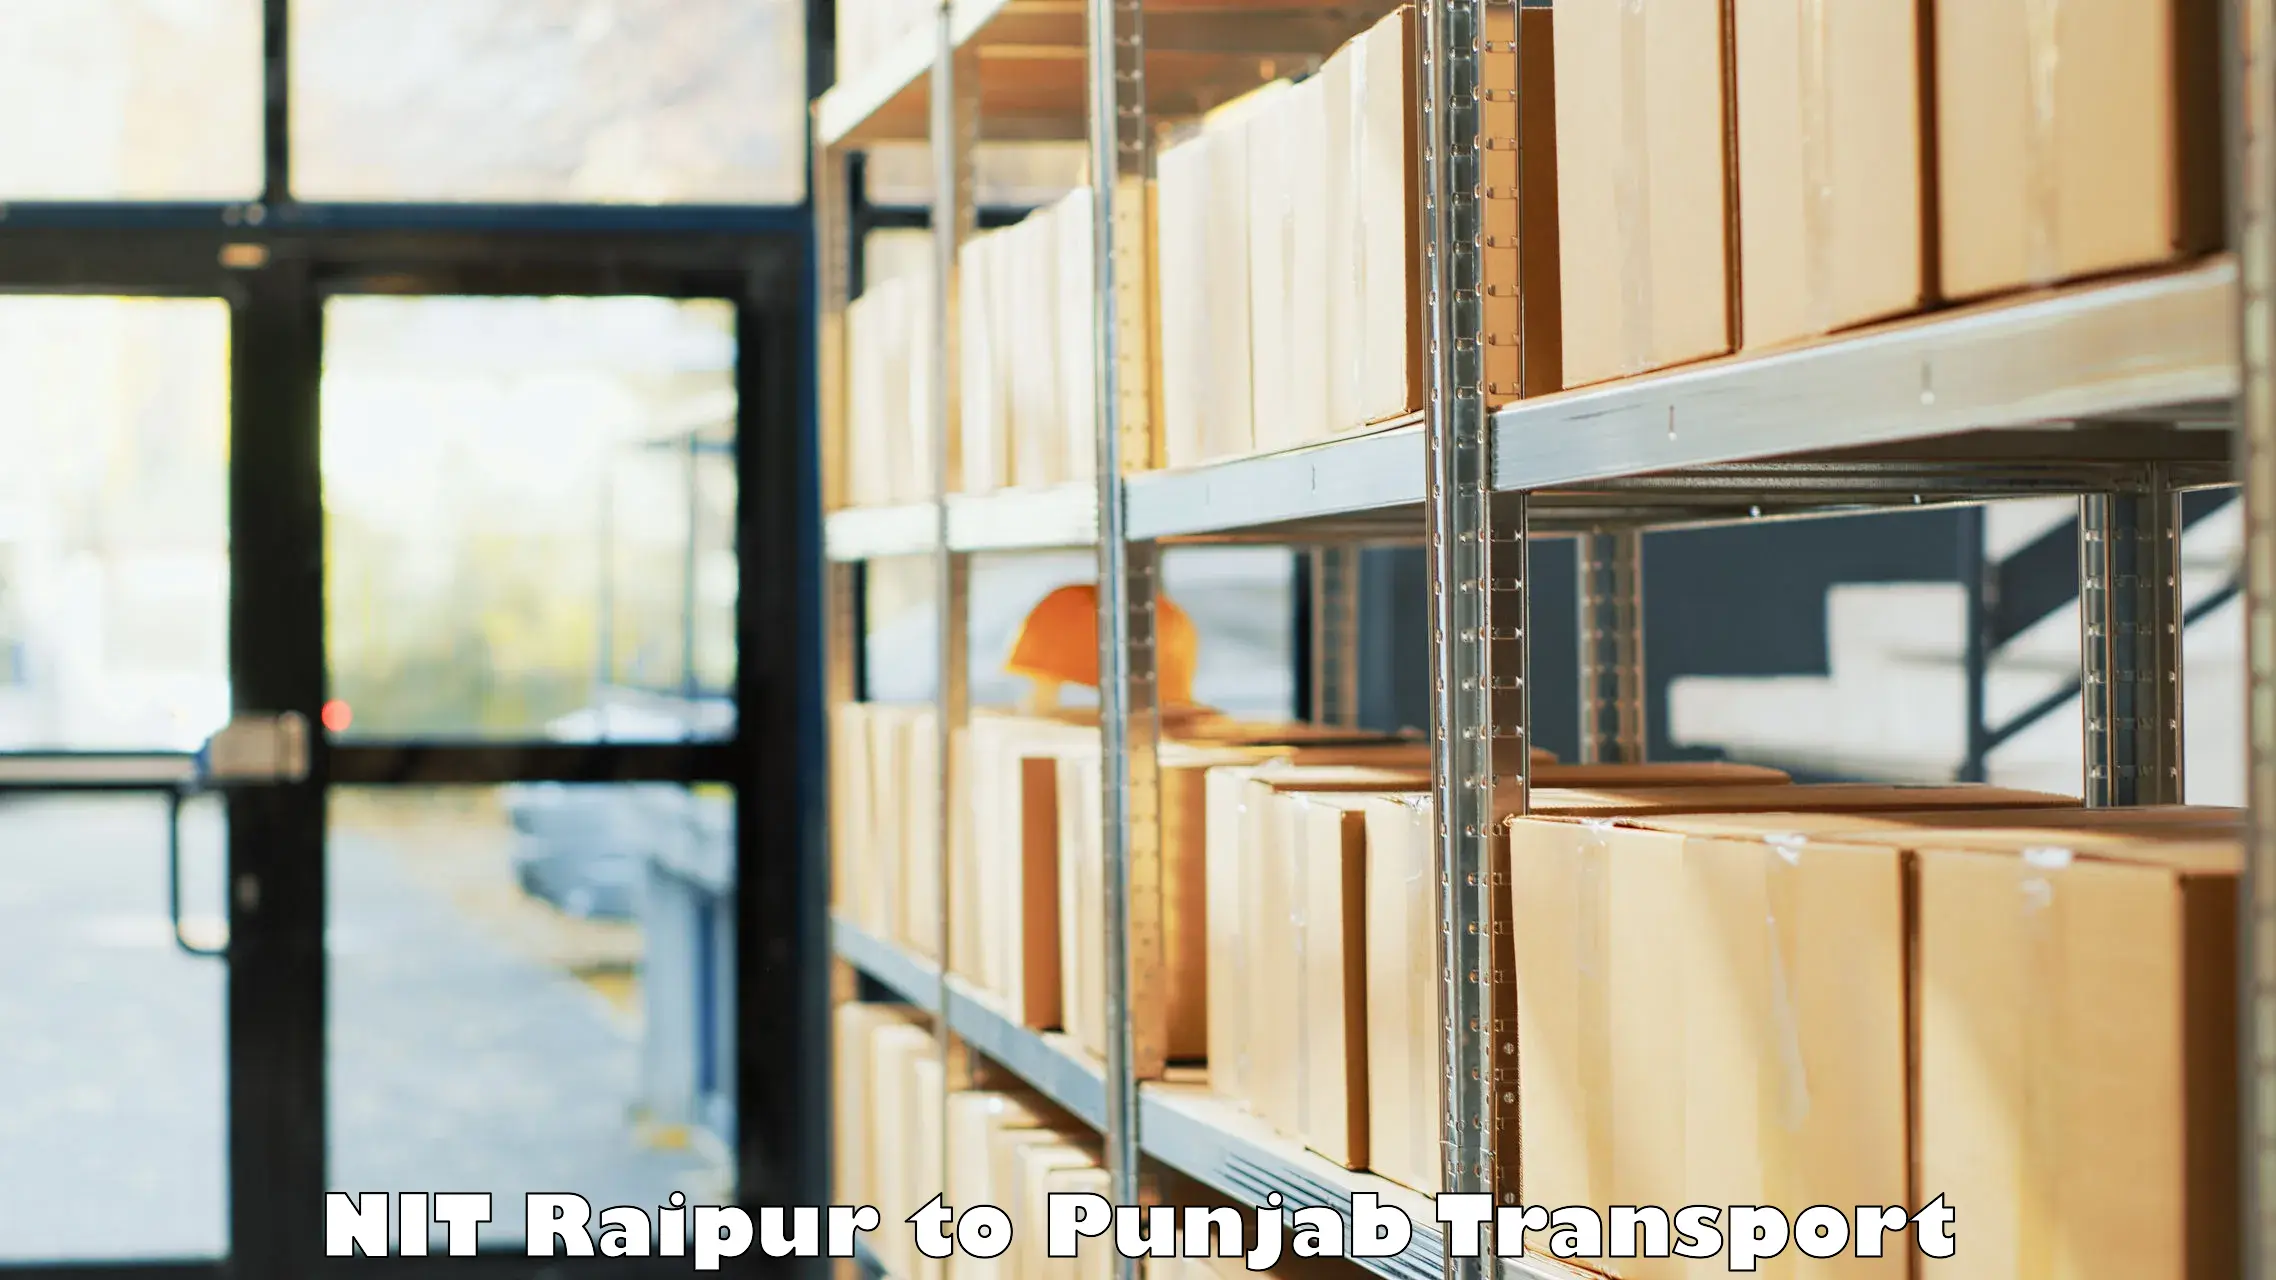 Two wheeler transport services NIT Raipur to Zirakpur